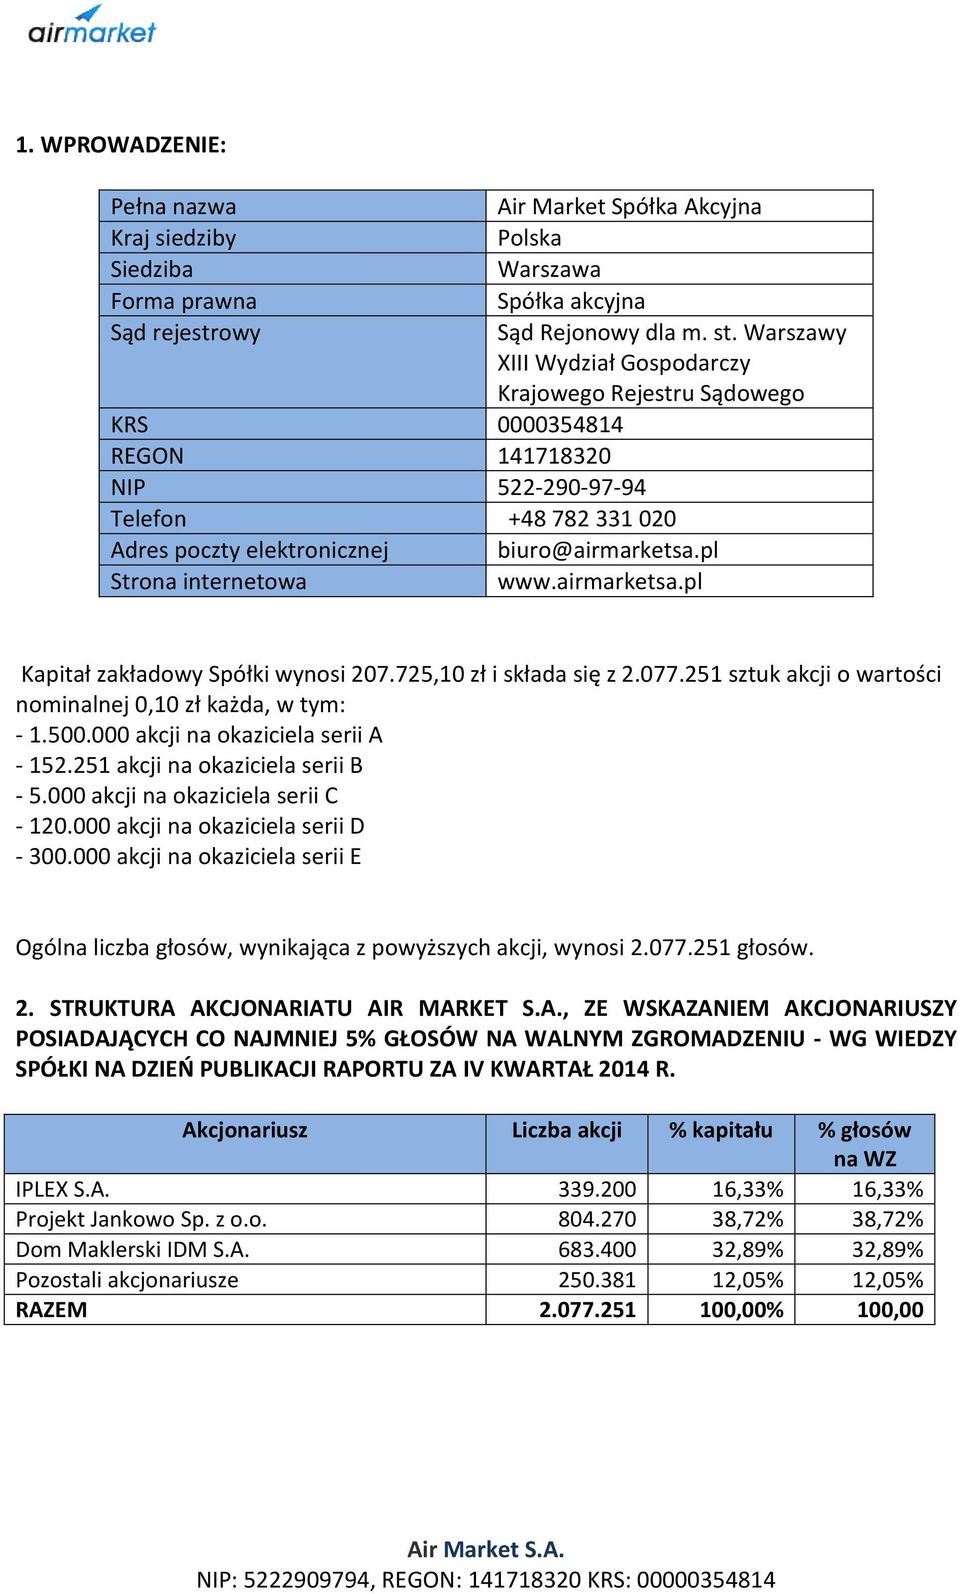 pl www.airmarketsa.pl Kapitał zakładowy Spółki wynosi 207.725,10 zł i składa się z 2.077.251 sztuk akcji o wartości nominalnej 0,10 zł każda, w tym: 1.500.000 akcji na okaziciela serii A 152.